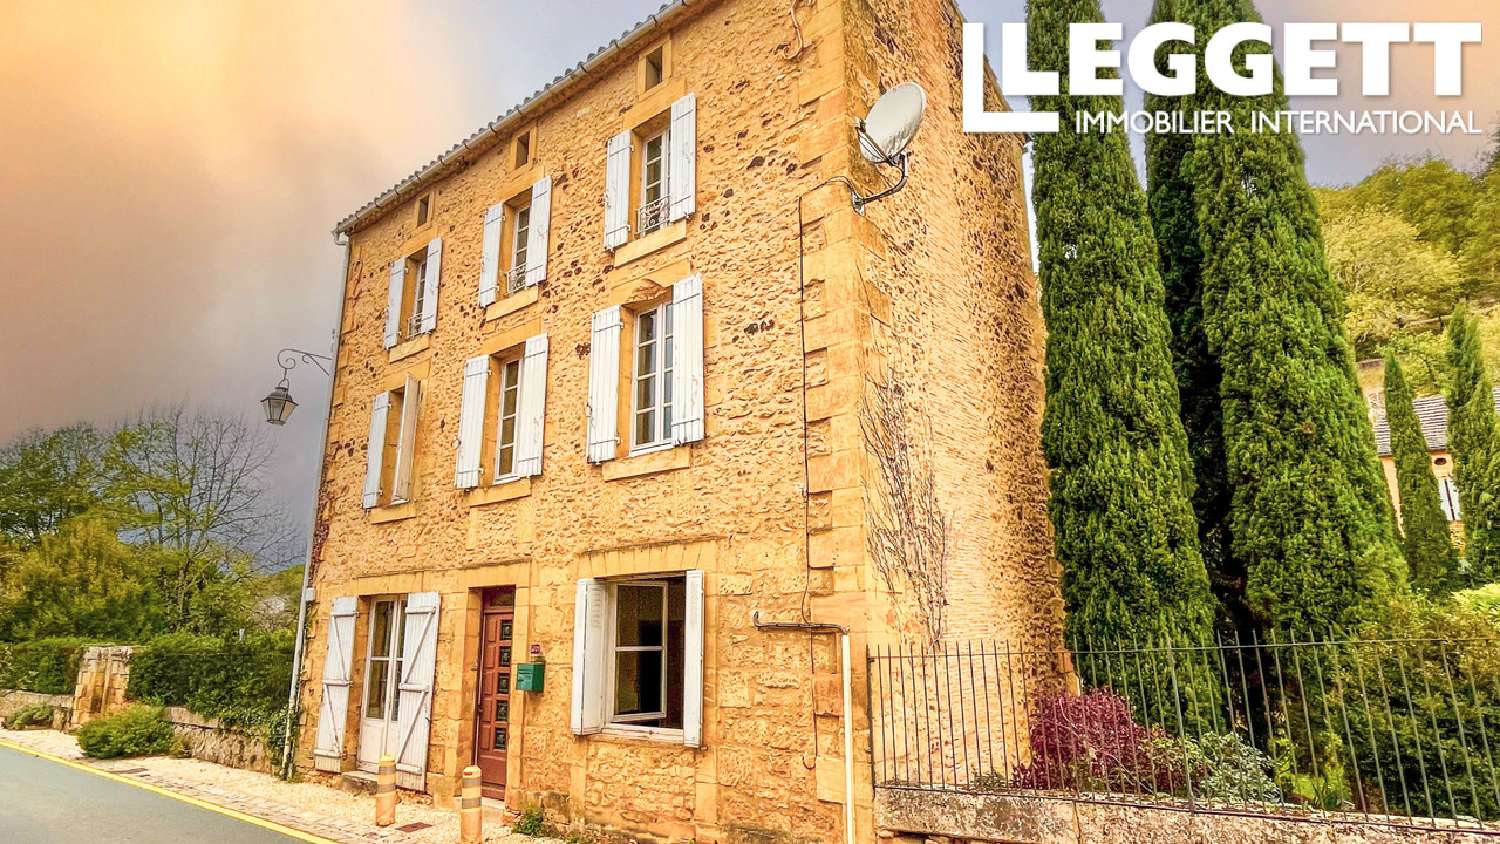  à vendre maison de village Cadouin Dordogne 1